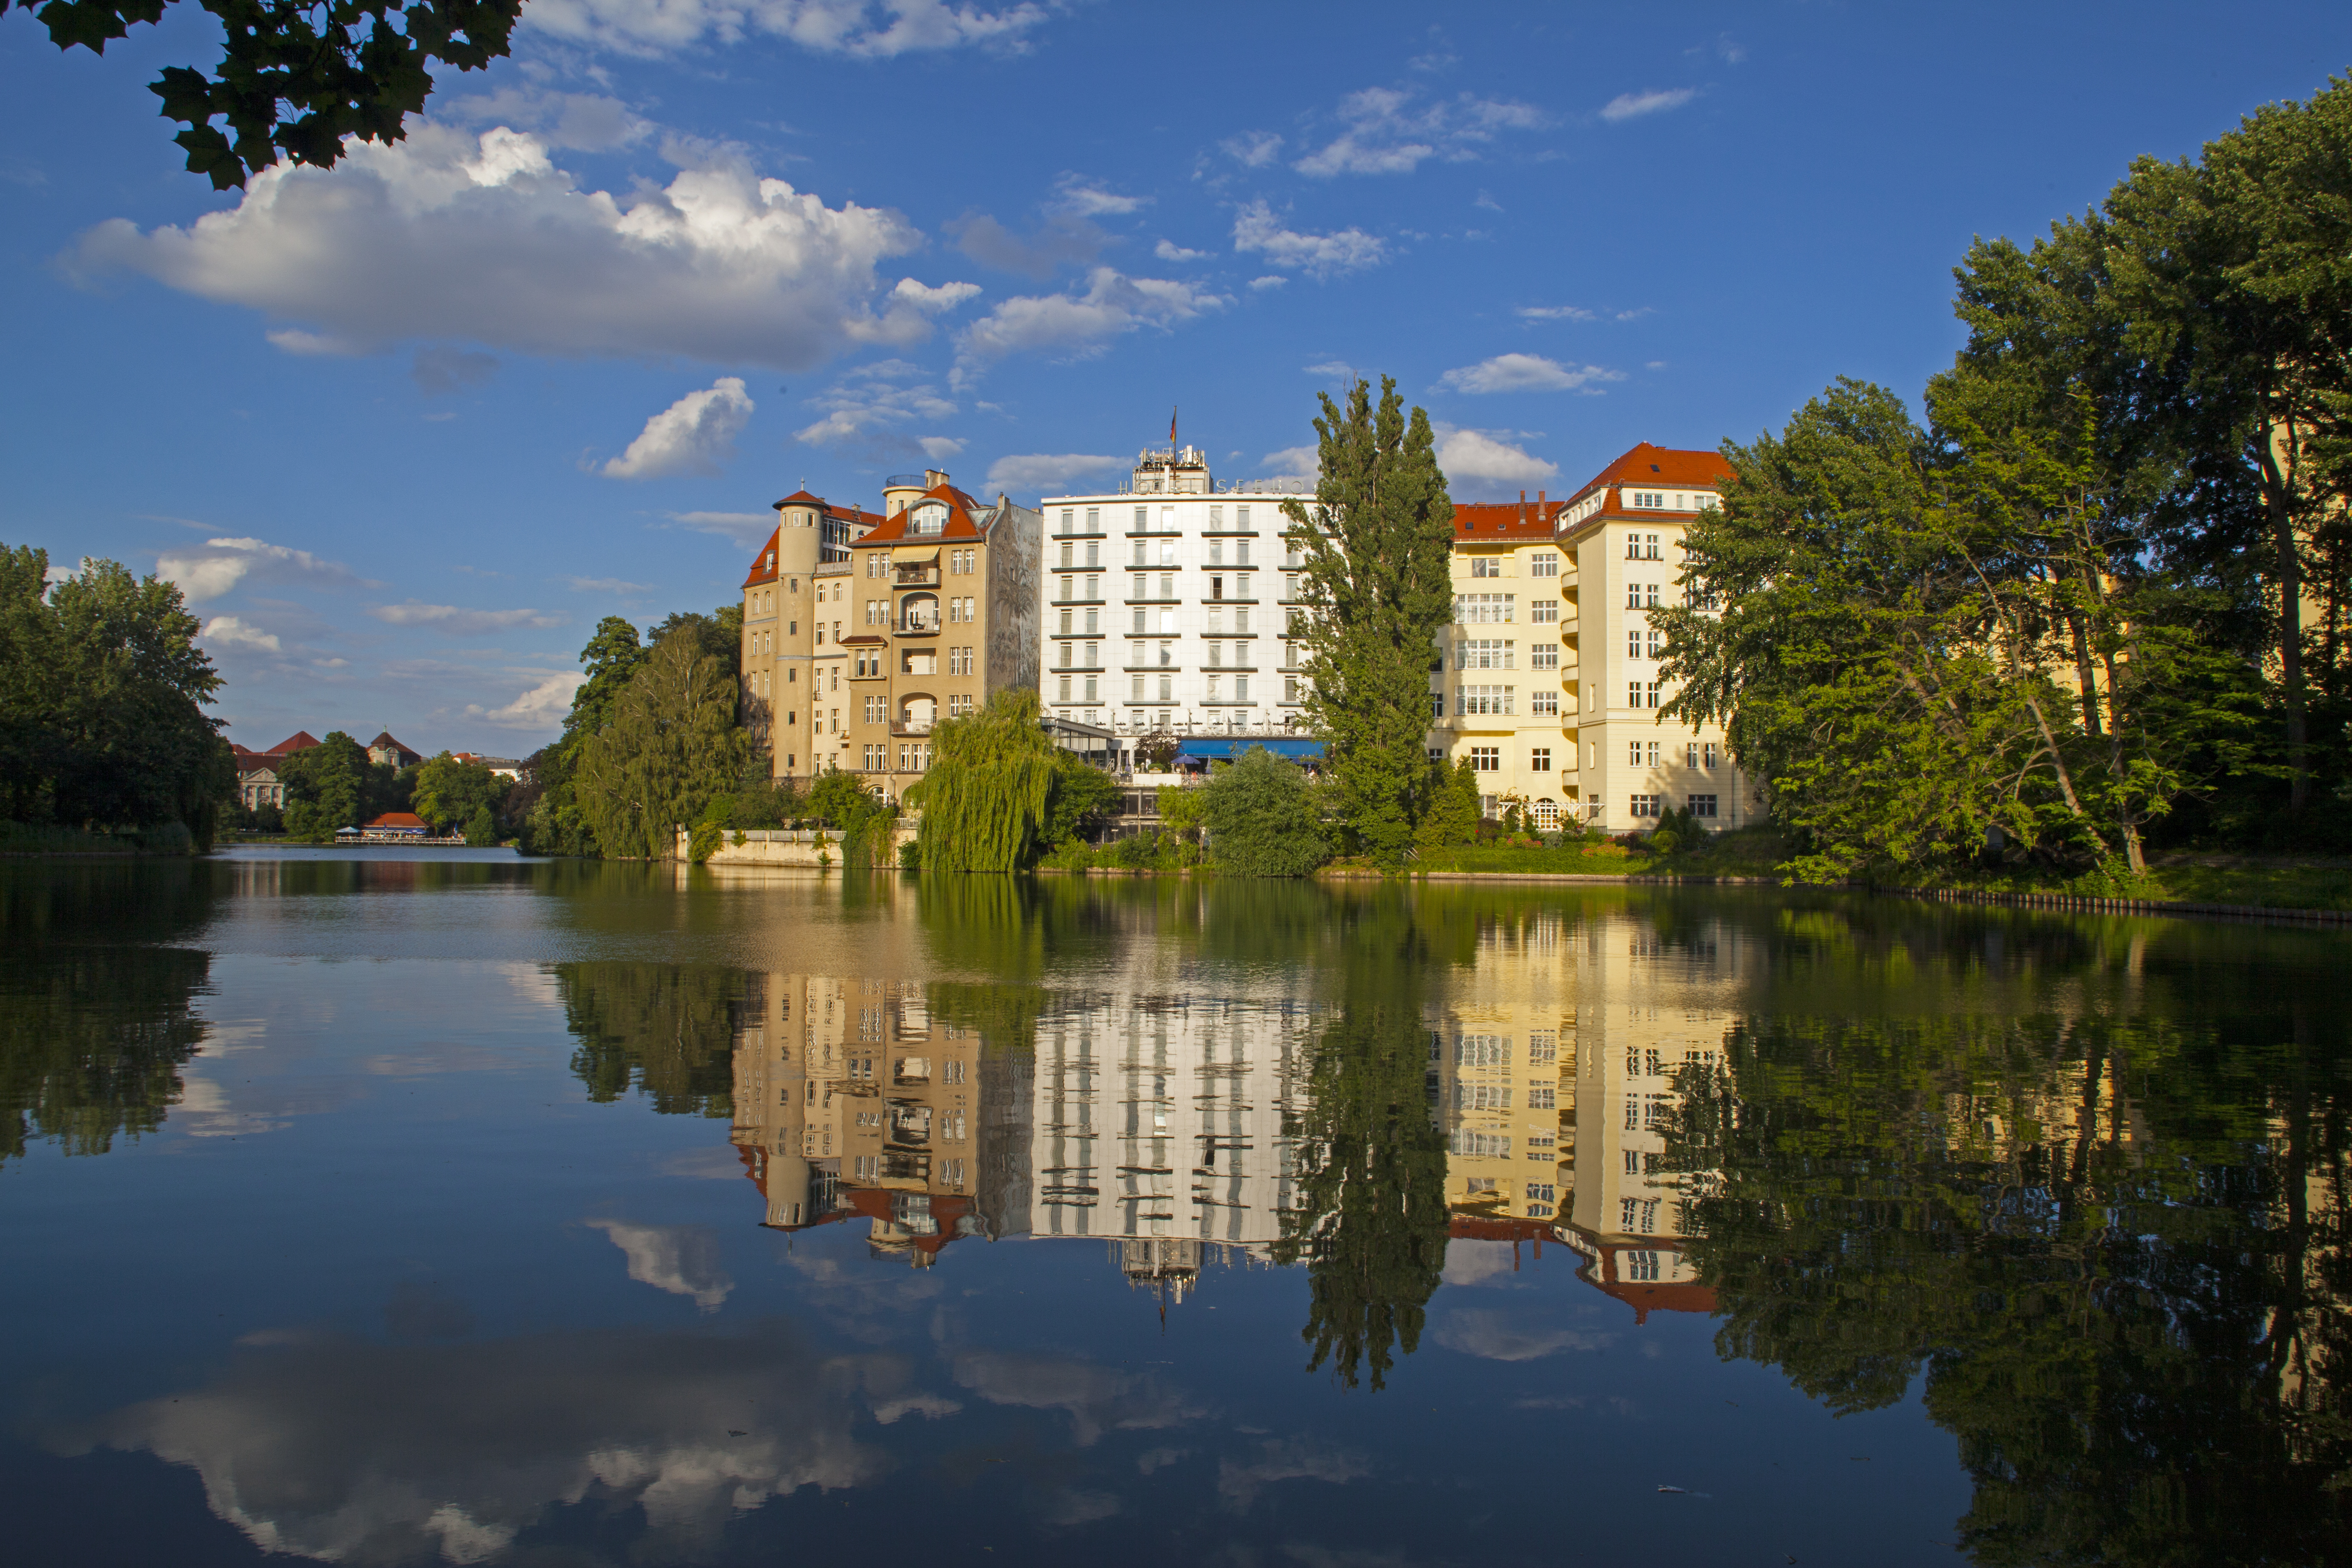 Ringhotel in Berlin lake side